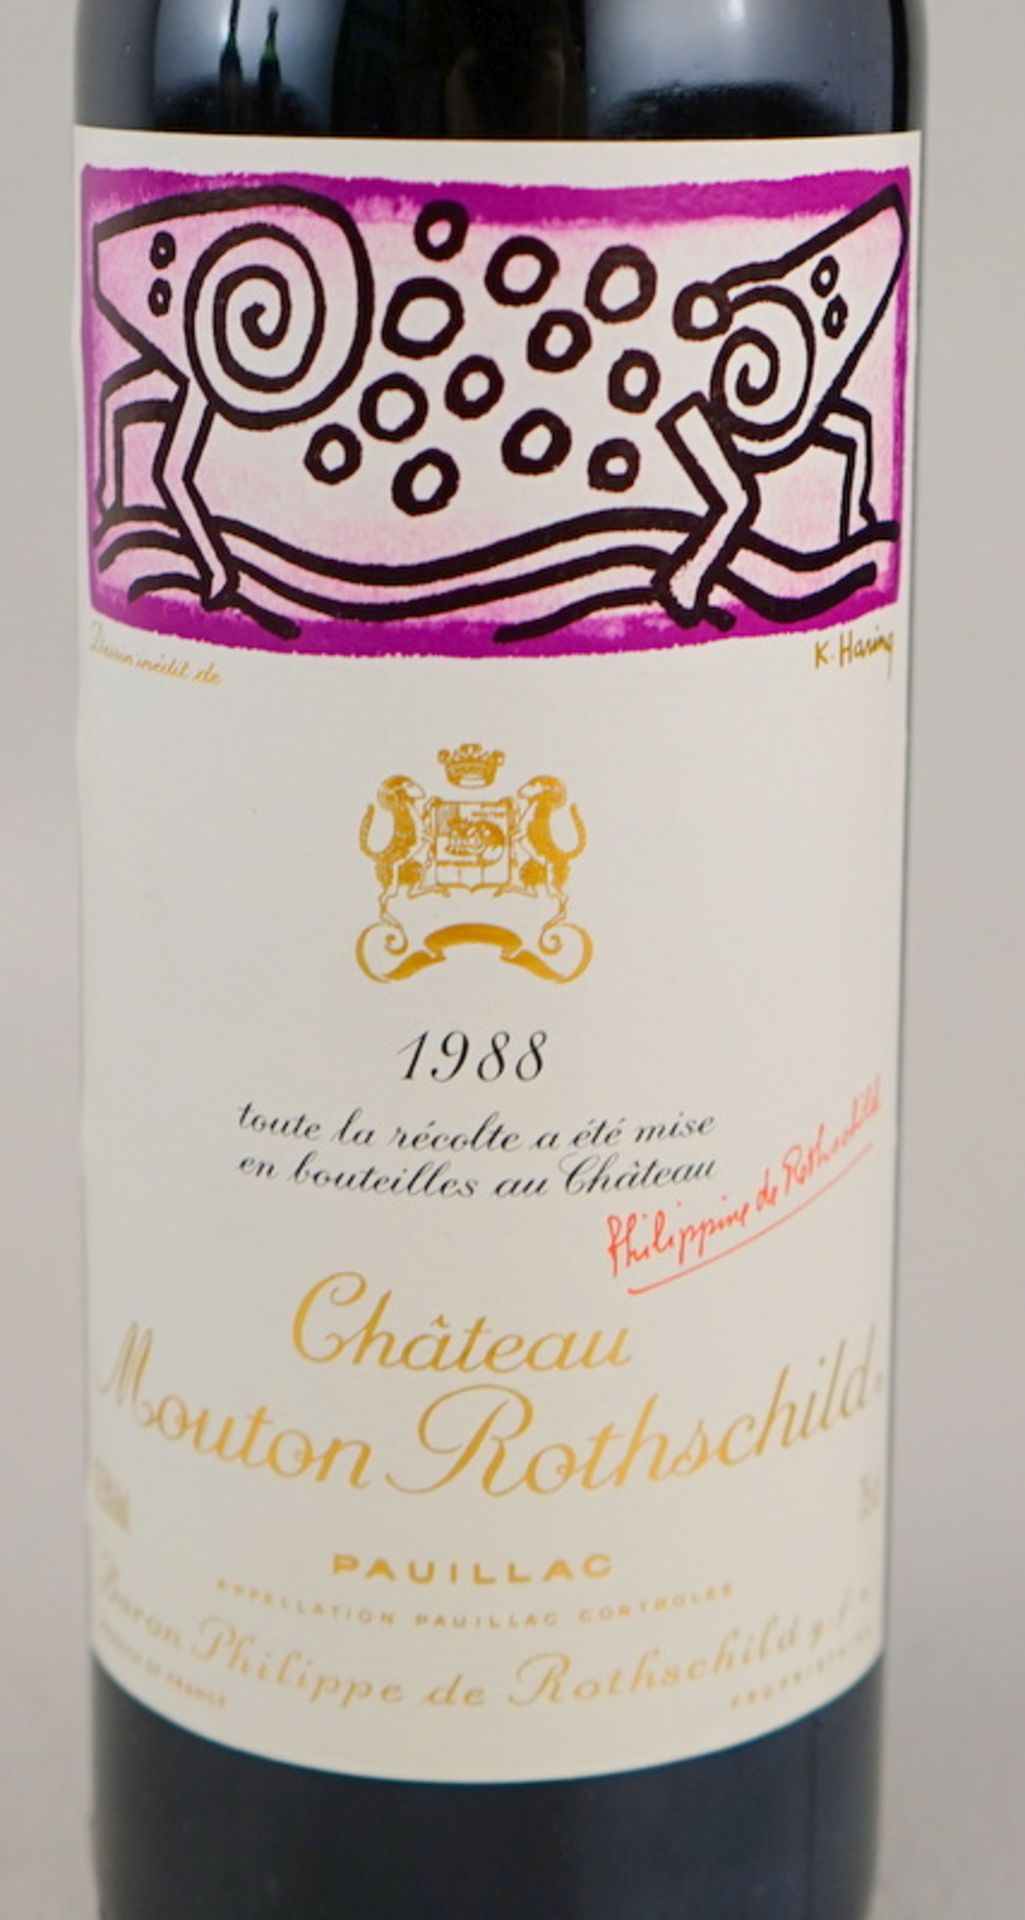 Chateau Mouton Rothschild, 1988, Etikett von Keith Haring - Image 2 of 2